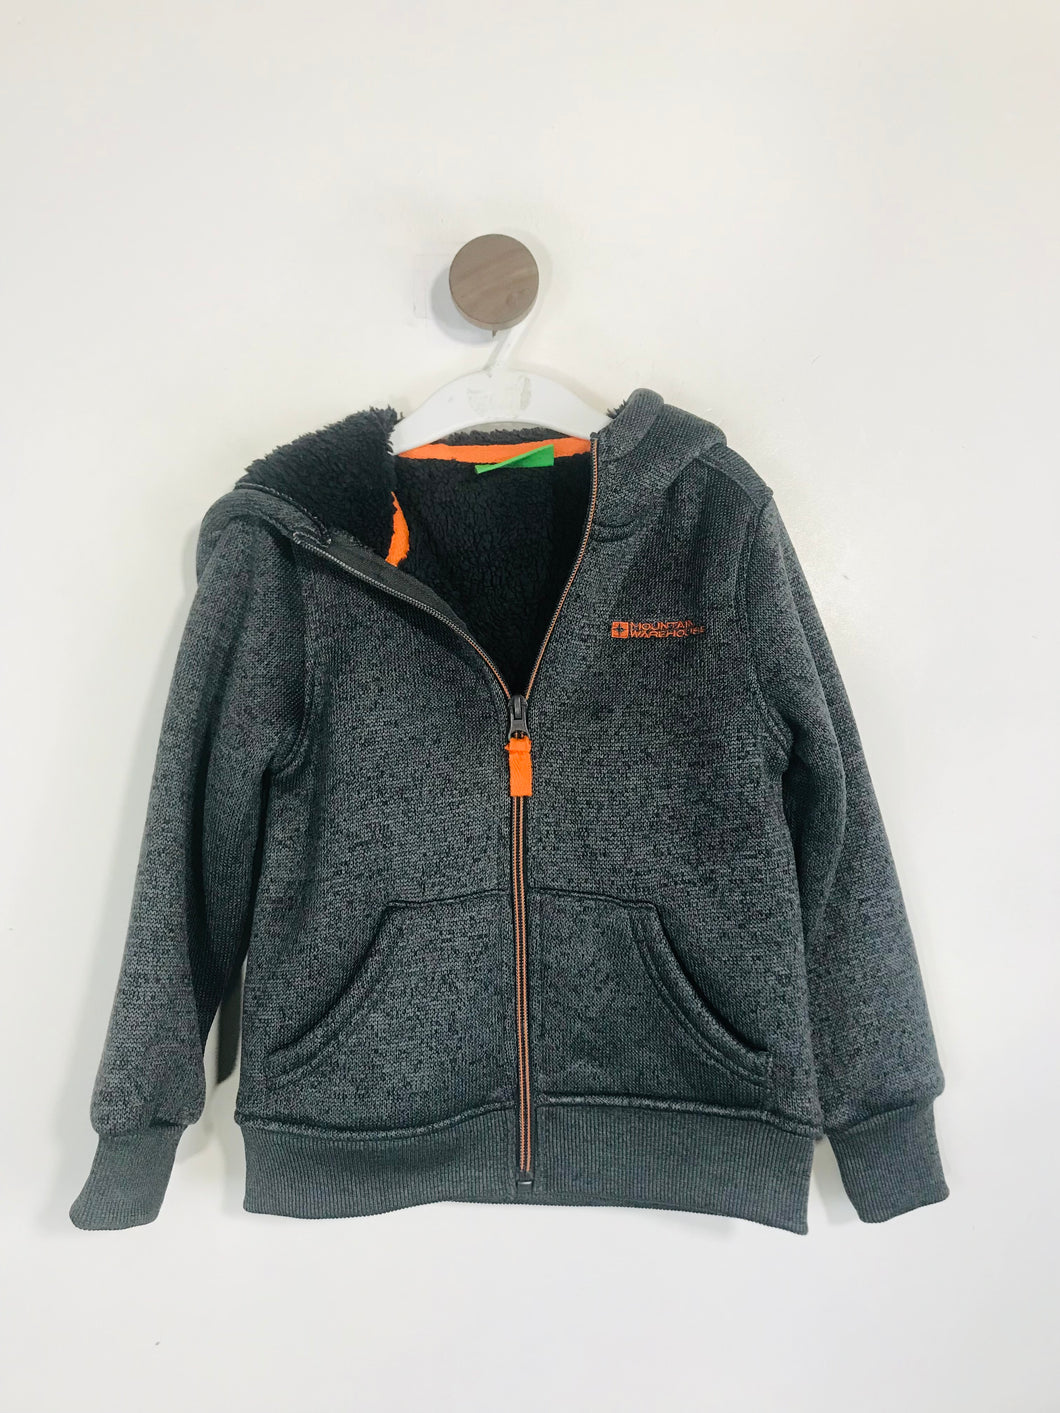 Mountain Warehouse Kid's Fleece Zip Sweatshirt | 3-4 Years | Grey